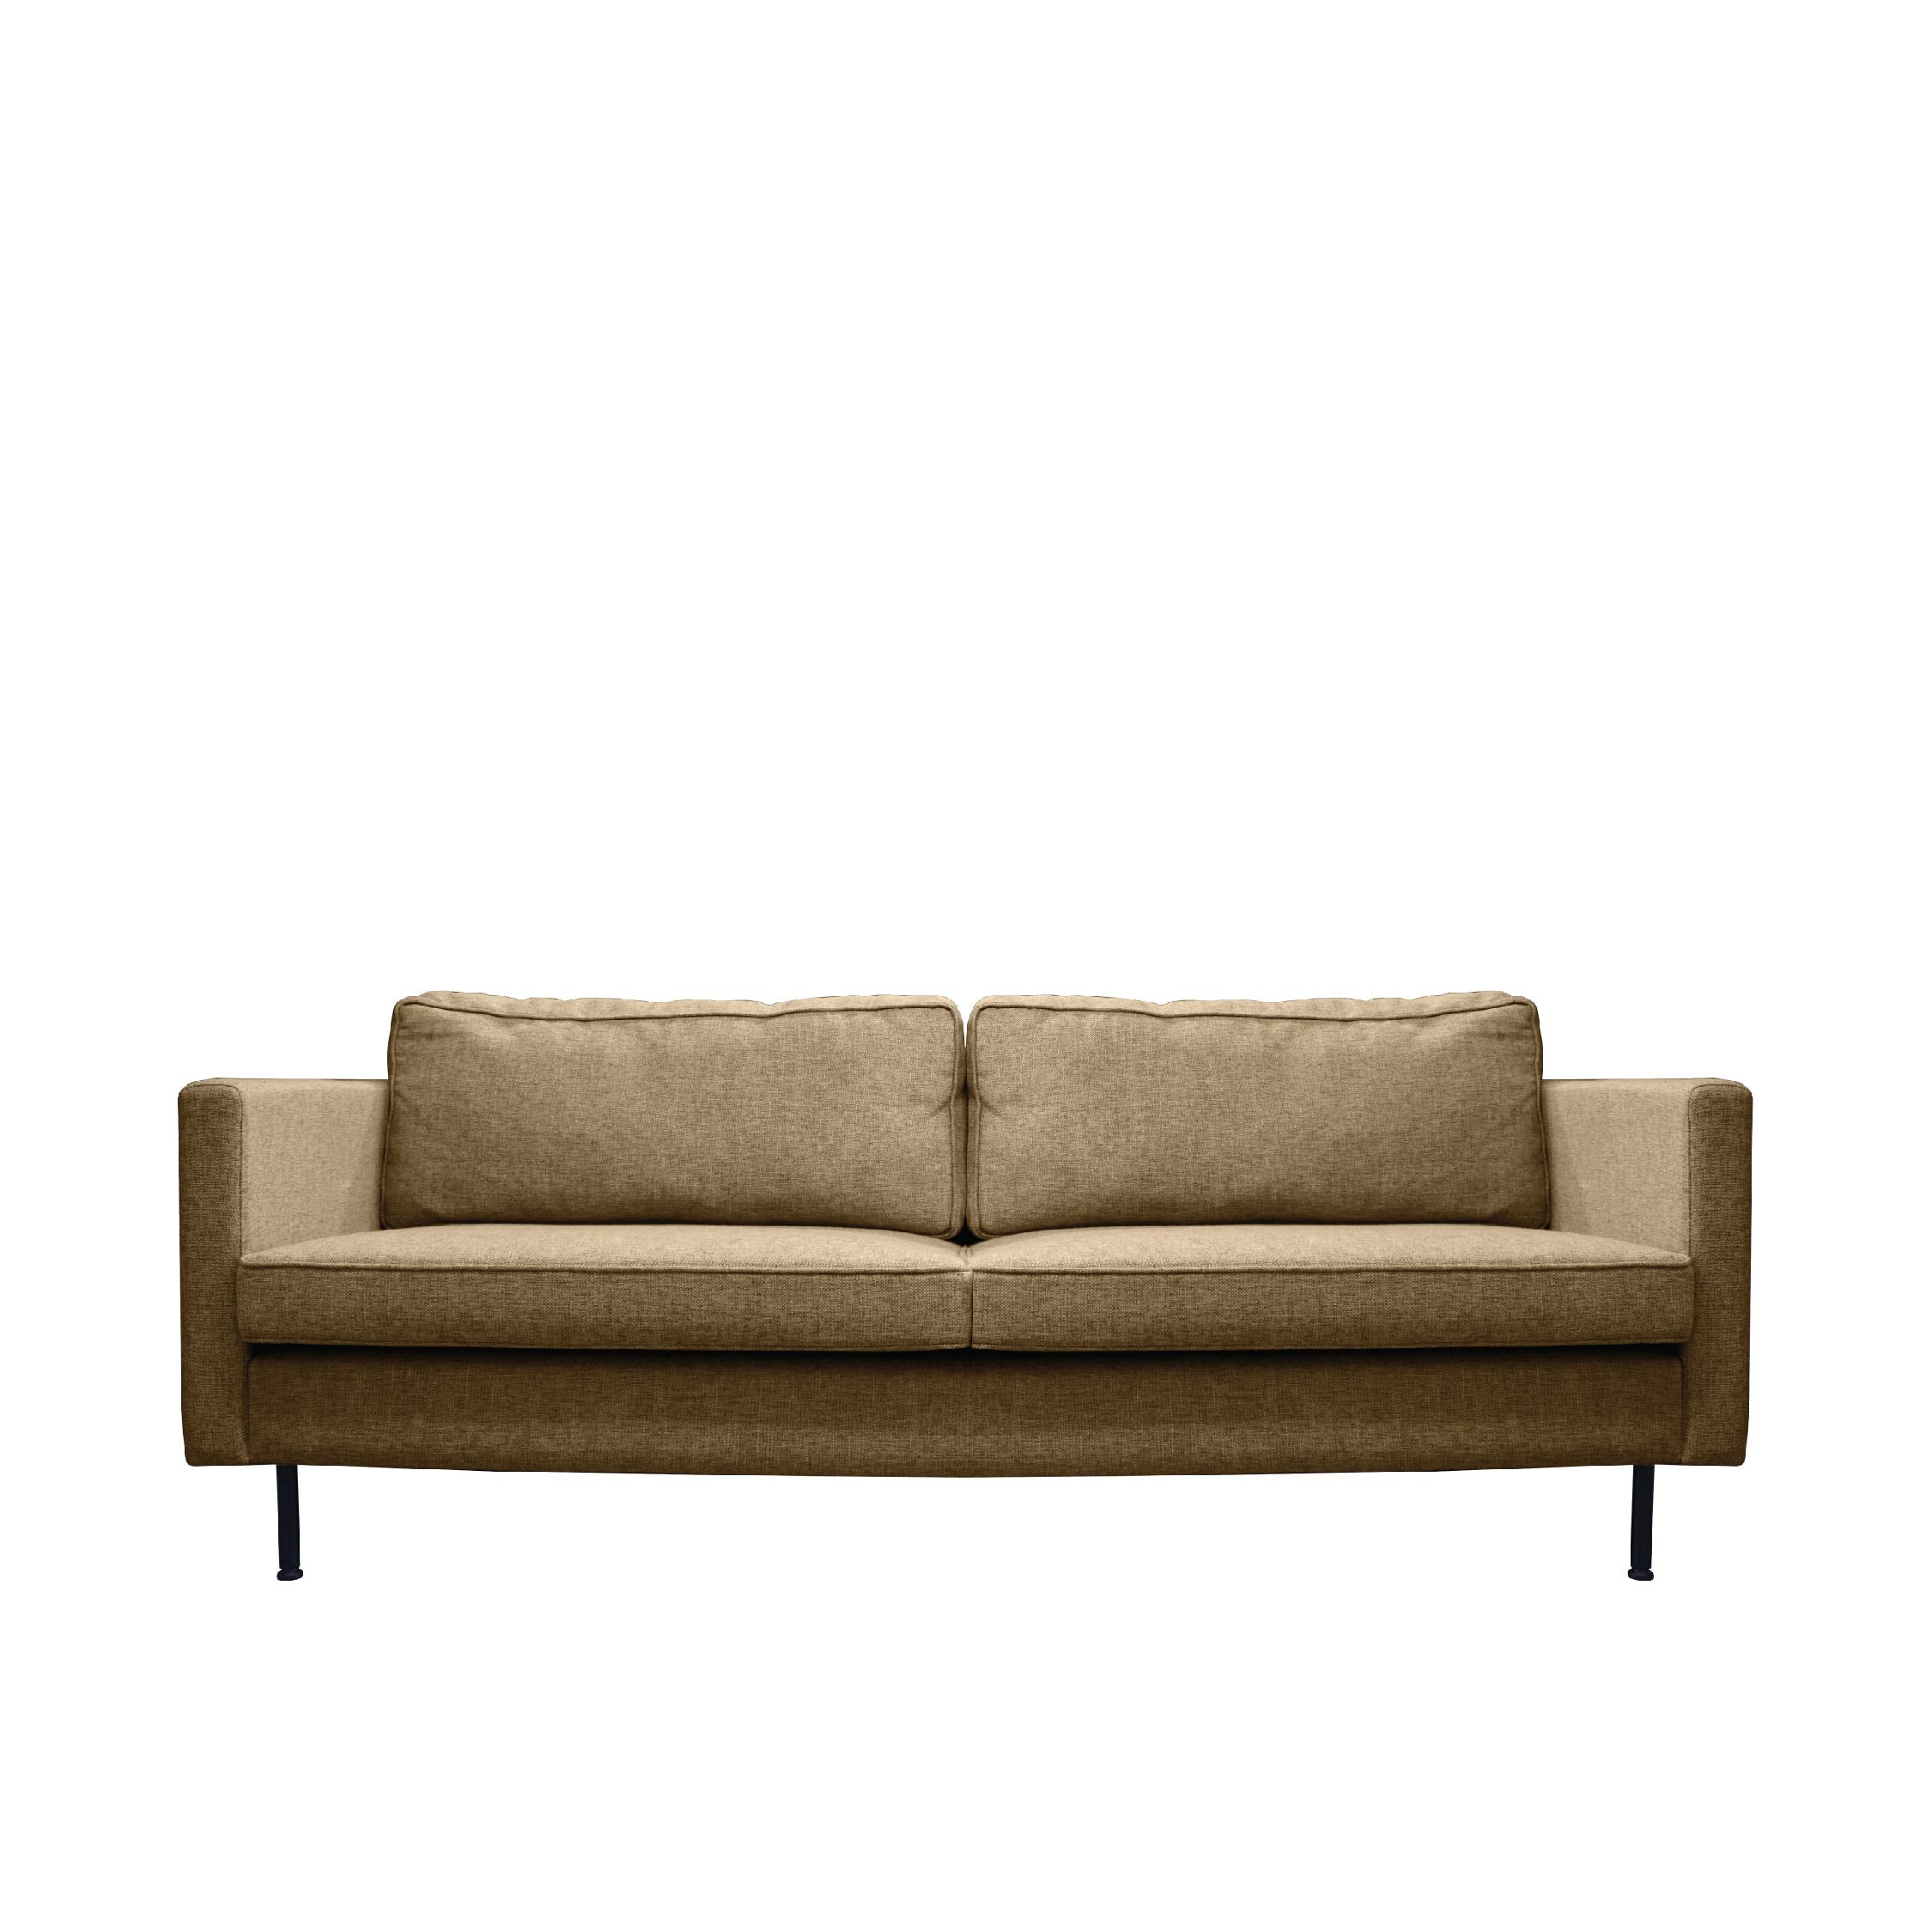 GARIS Sofa 3 Seater